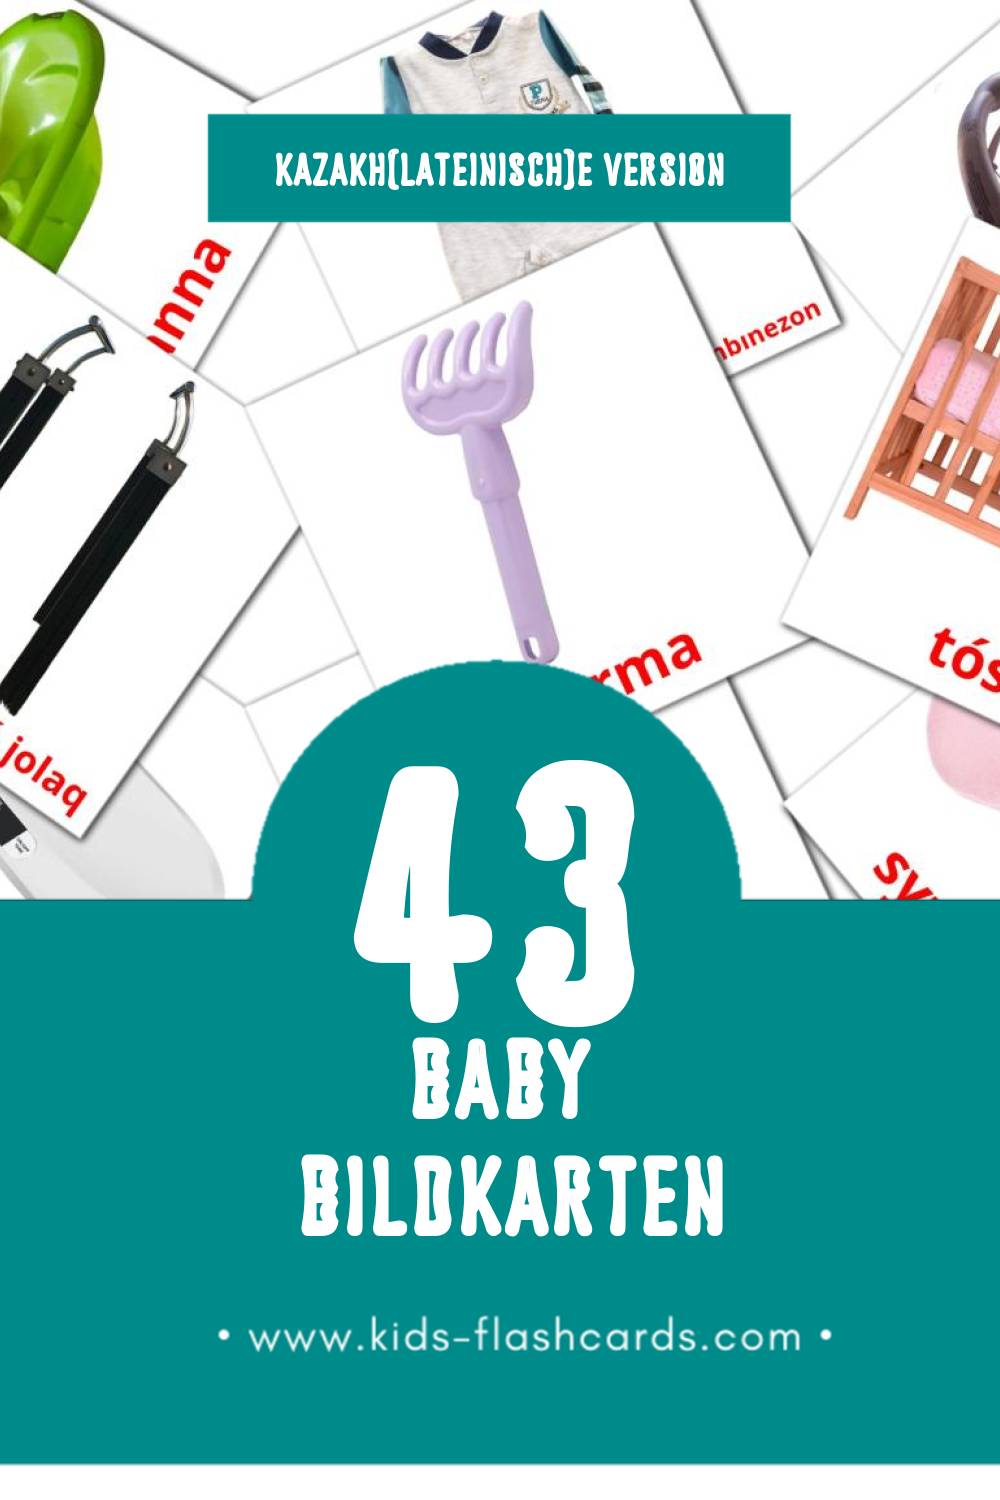 Visual bala Flashcards für Kleinkinder (43 Karten in Kazakh(lateinisch))